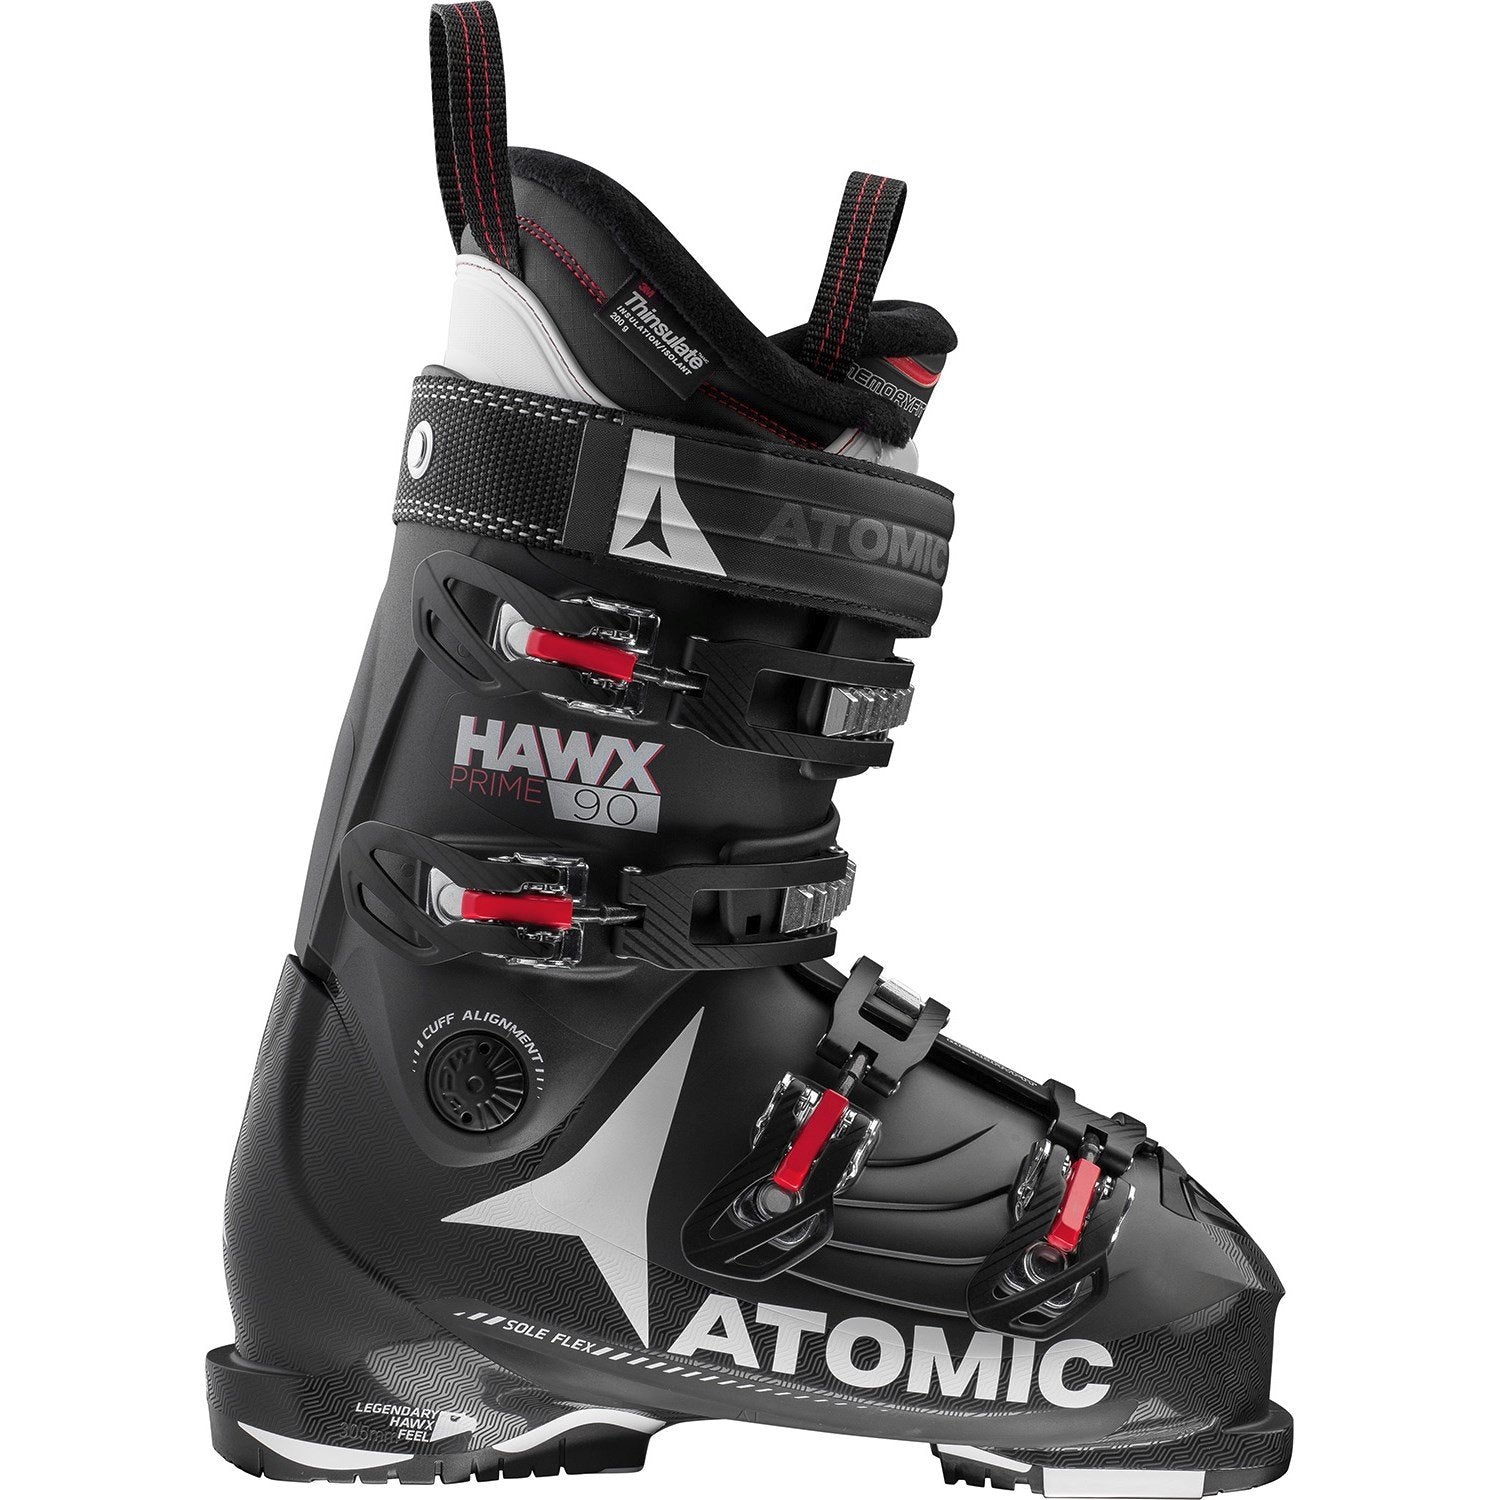 Atomic Hawx Prime 90 ski boot 2017